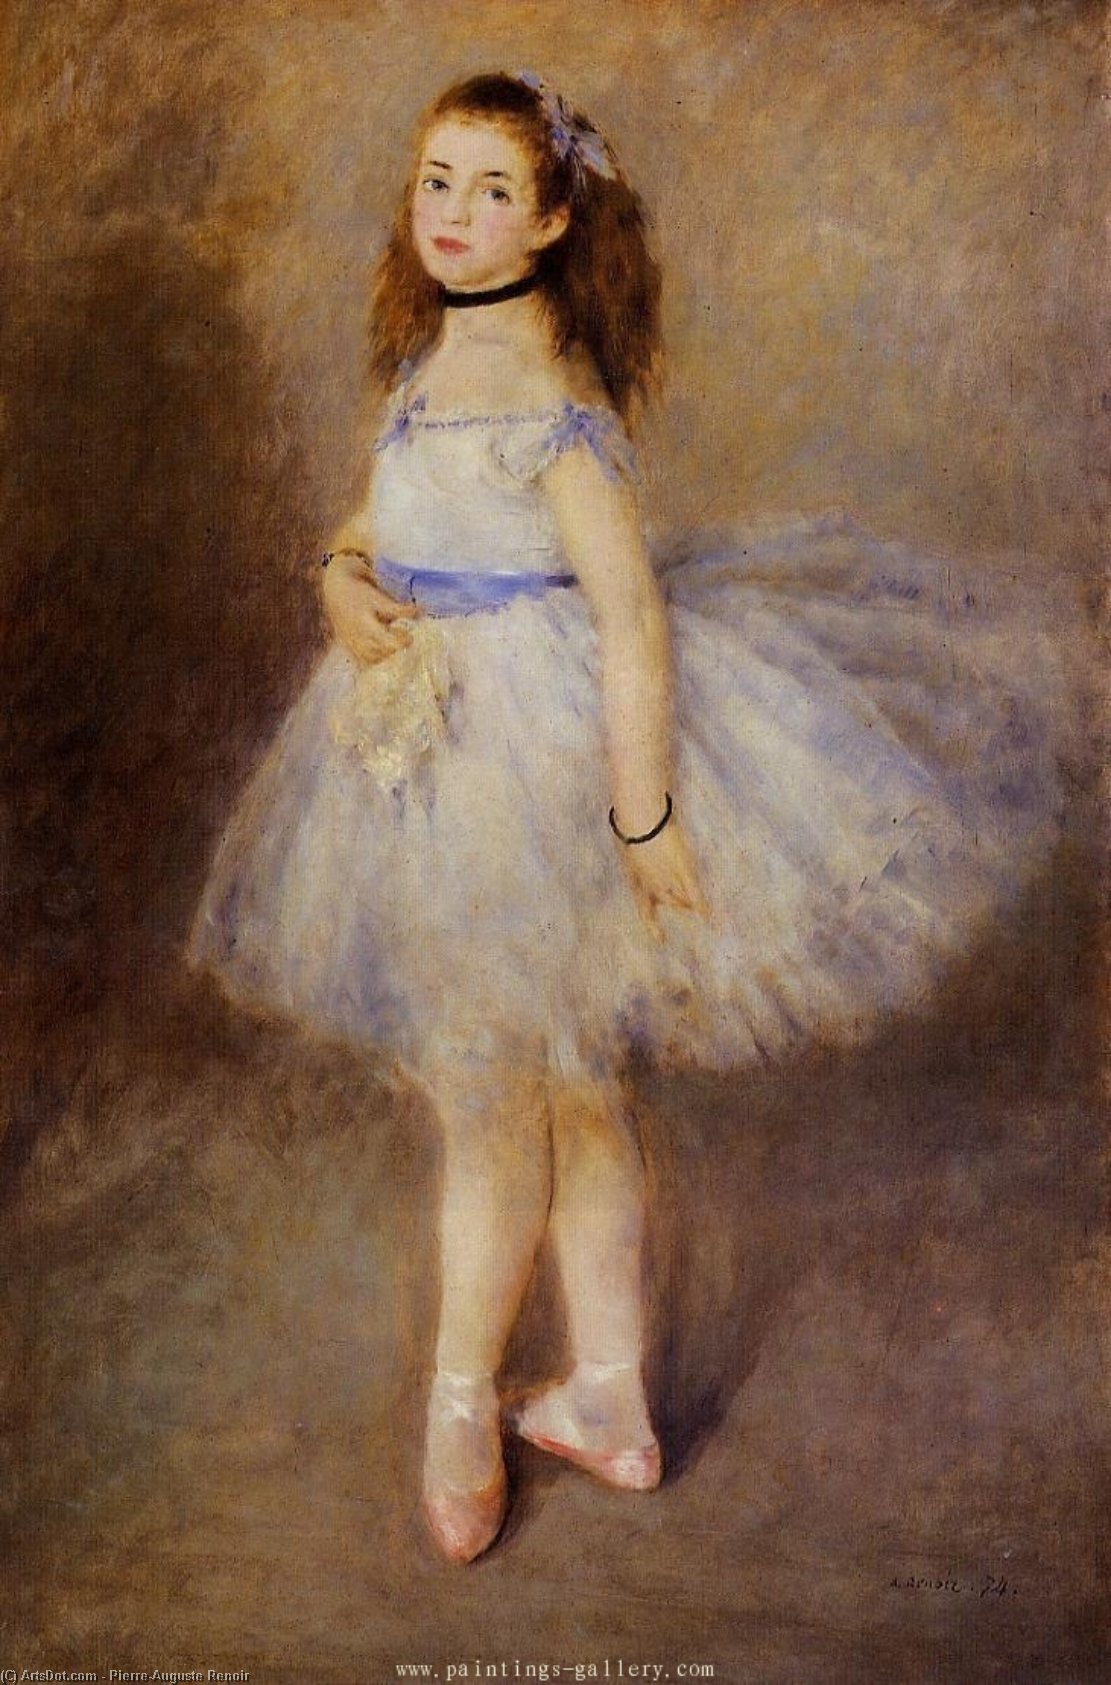 WikiOO.org - 백과 사전 - 회화, 삽화 Pierre-Auguste Renoir - Dancer